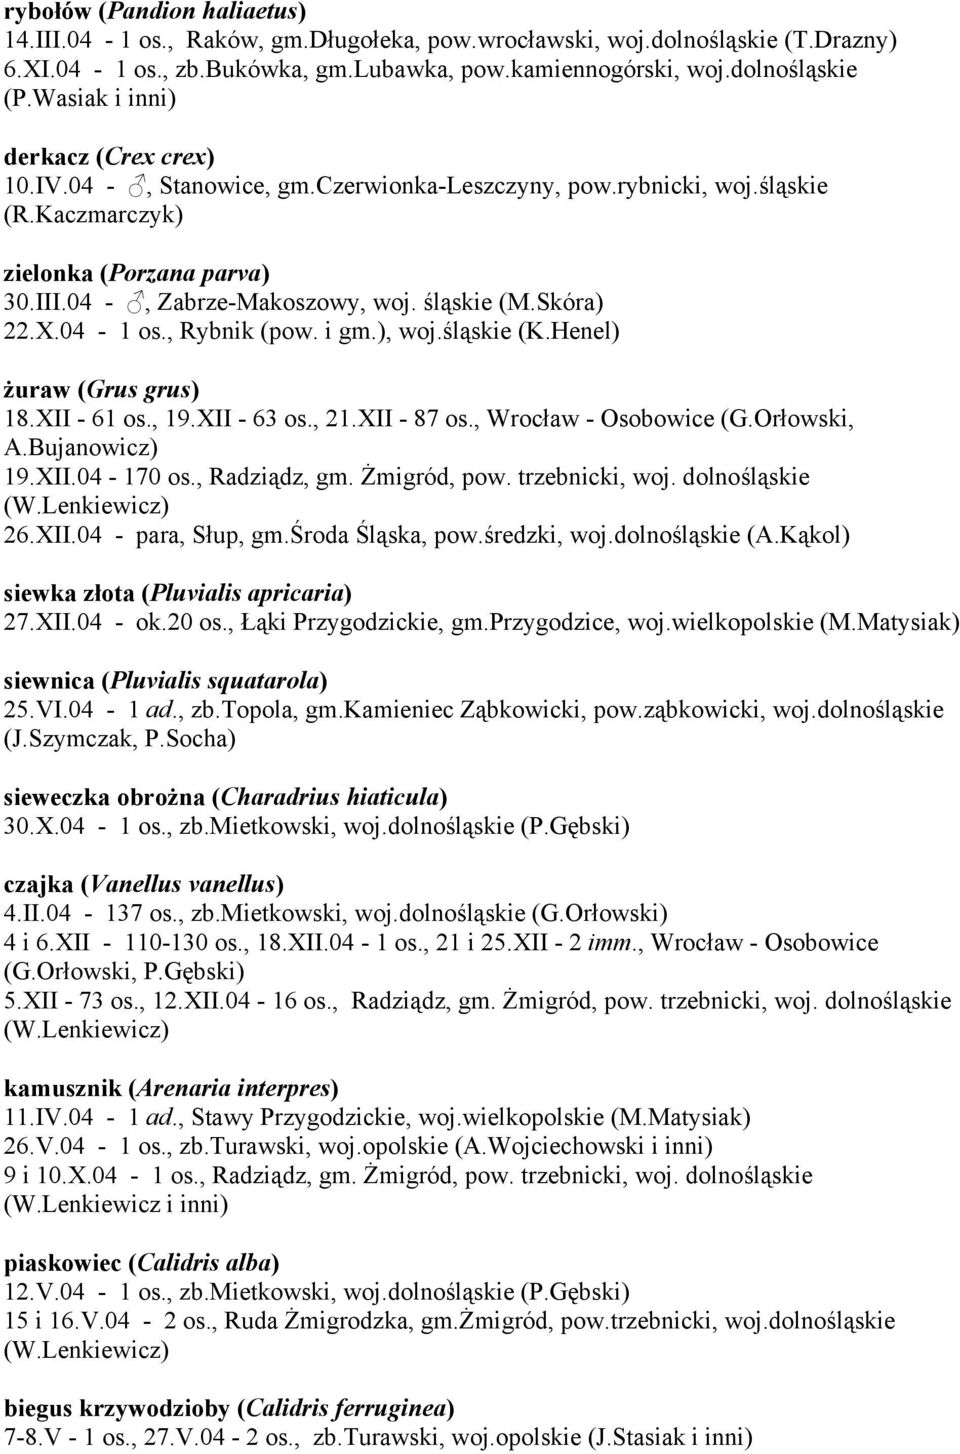 Skóra) 22.X.04-1 os., Rybnik (pow. i gm.), woj.śląskie (K.Henel) żuraw (Grus grus) 18.XII - 61 os., 19.XII - 63 os., 21.XII - 87 os., Wrocław - Osobowice (G.Orłowski, A.Bujanowicz) 19.XII.04-170 os.